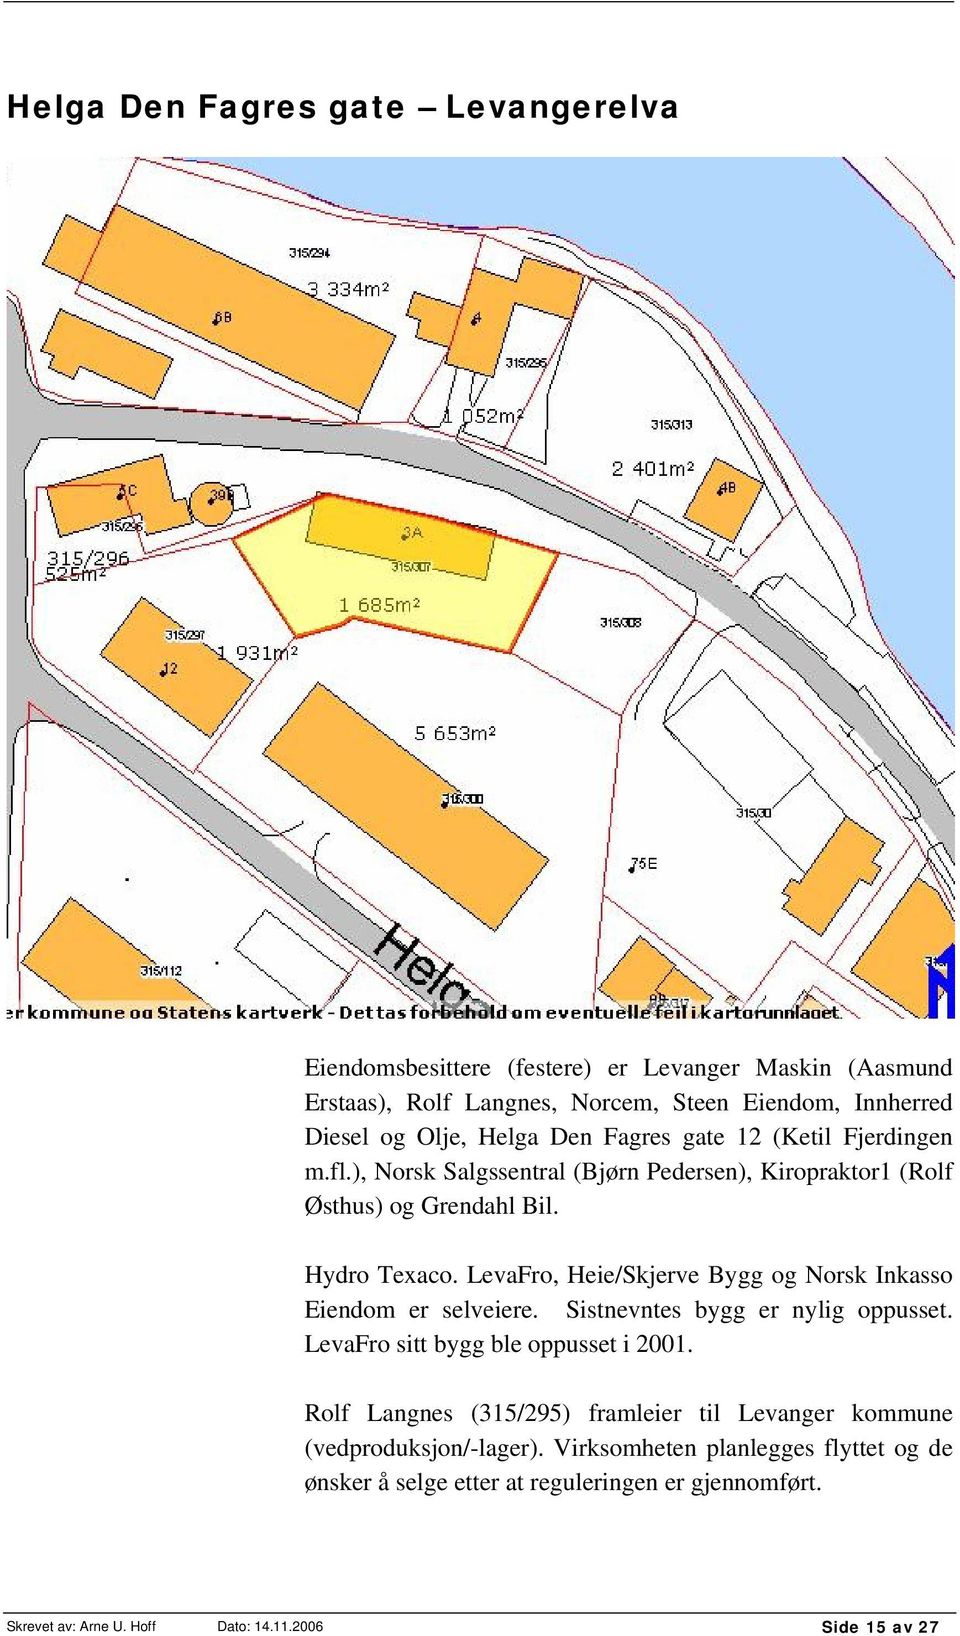 LevaFro, Heie/Skjerve Bygg og Norsk Inkasso Eiendom er selveiere. Sistnevntes bygg er nylig oppusset. LevaFro sitt bygg ble oppusset i 2001.